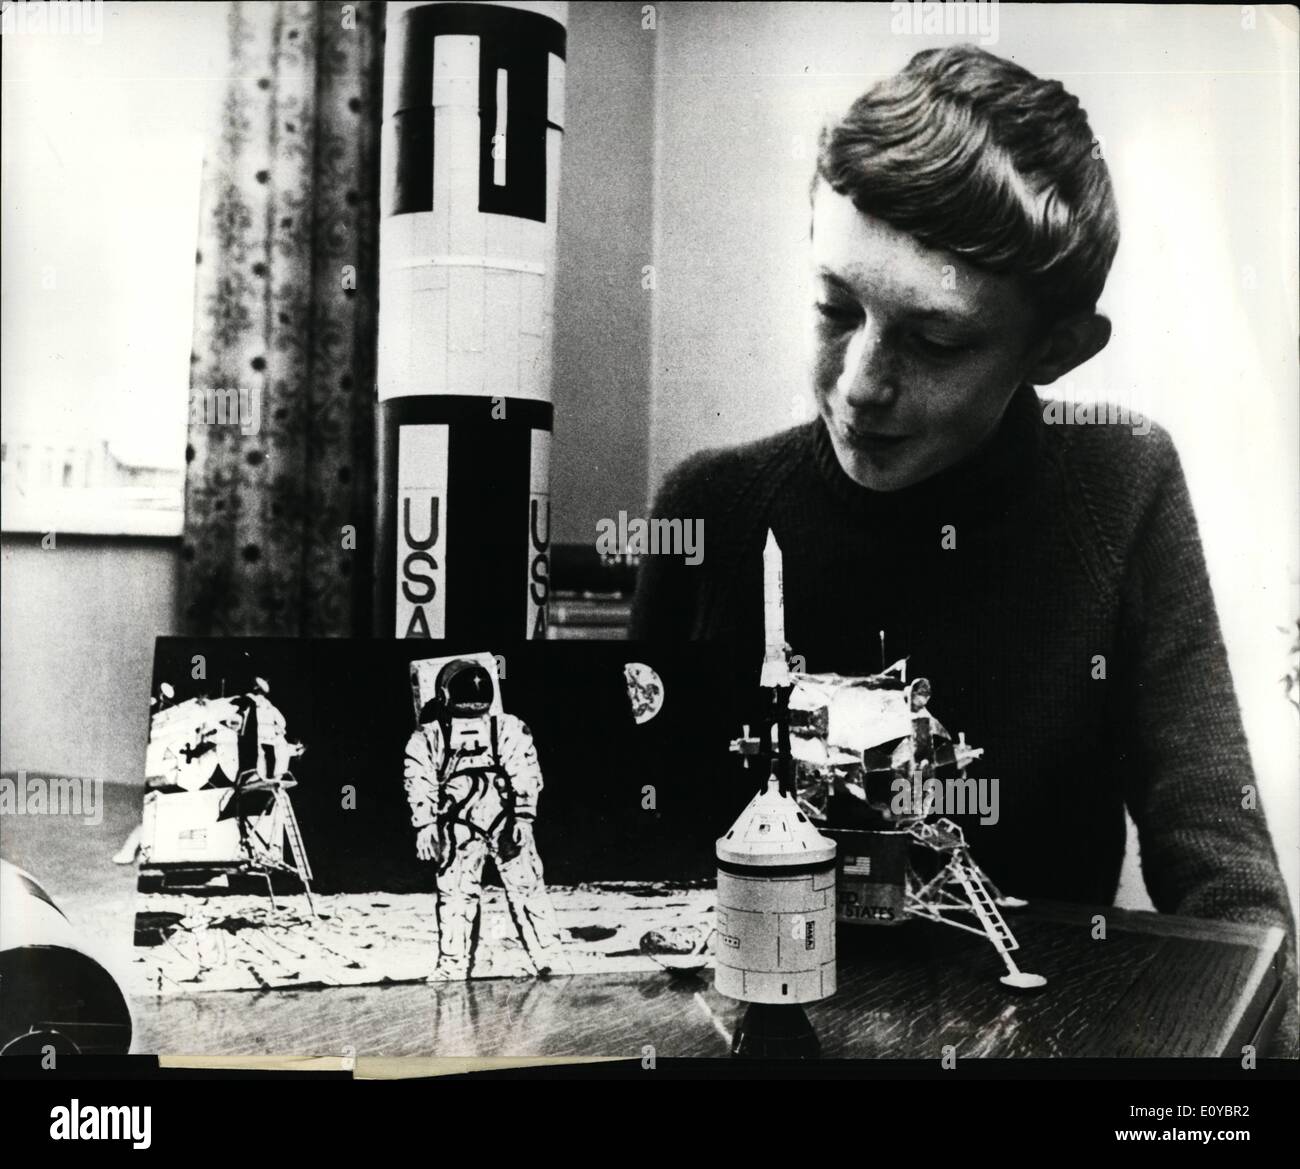 08 août 1969 - Précision de la peinture du garçon l'alunissage d'experts étonne. L'exactitude d'une peinture de l'atterrissage sur la lune, a réalisé trois semaines avant qu'il est passé par un garçon de 16 ans, a surpris les experts. Plus tôt cette semaine, l'artiste écolier, David Douglas Heck, appris que sa plume et encre peinture lui a valu un tour de contrôle de l'espace à Houston - et une rencontre possible avec les astronautes eux-mêmes. David's dessin montre un homme sur la lune, près de l'engin, et inclut même la célèbre empreintes sur la surface de la lune. Il a été voté par un panel de juges - dont M. Banque D'Images